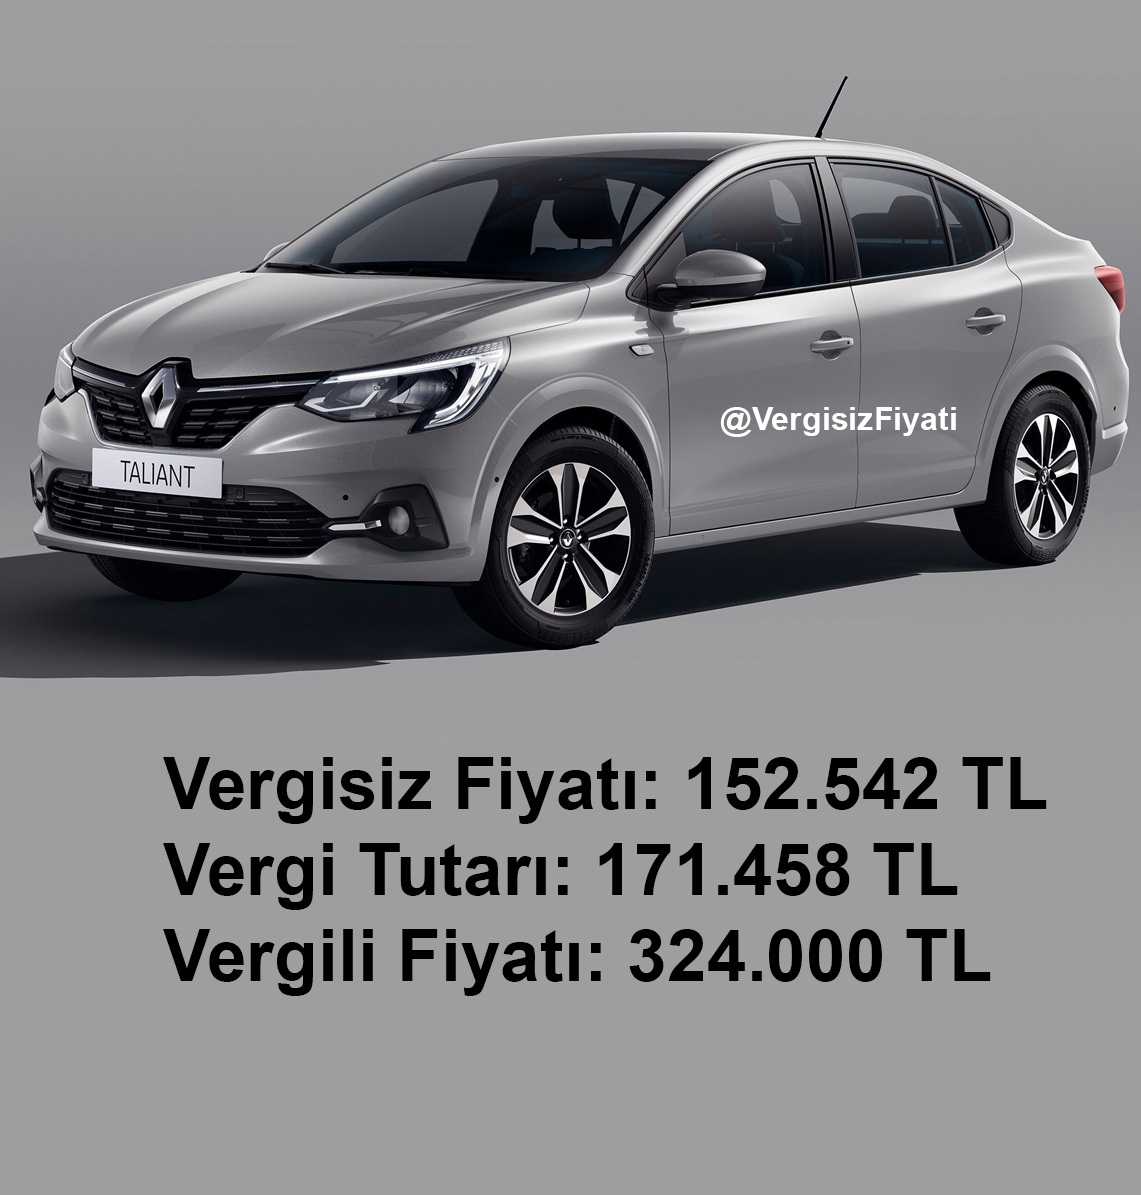 Renault Taliant Joy 1.0 Sce 65 bg vergisiz fiyatı ne kadar?